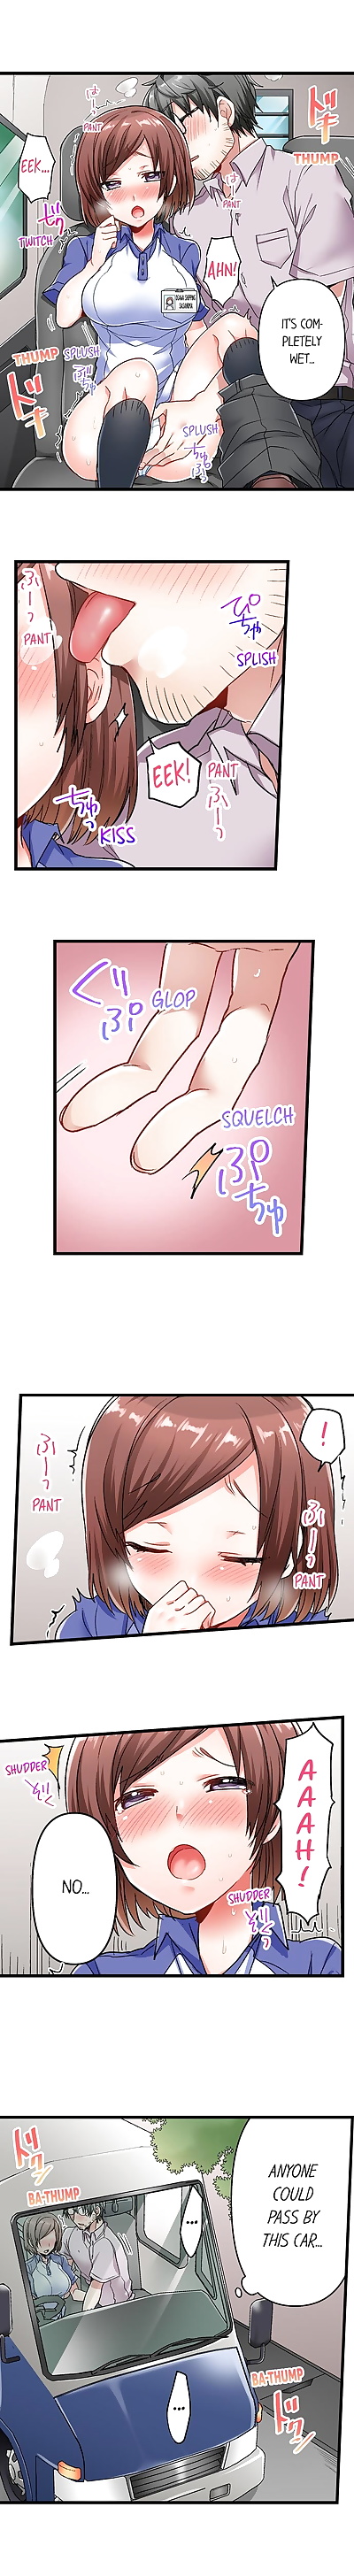 anglais manga 5 deuxième Sexe livraison PARTIE 2, big breasts , full color  full-censorship